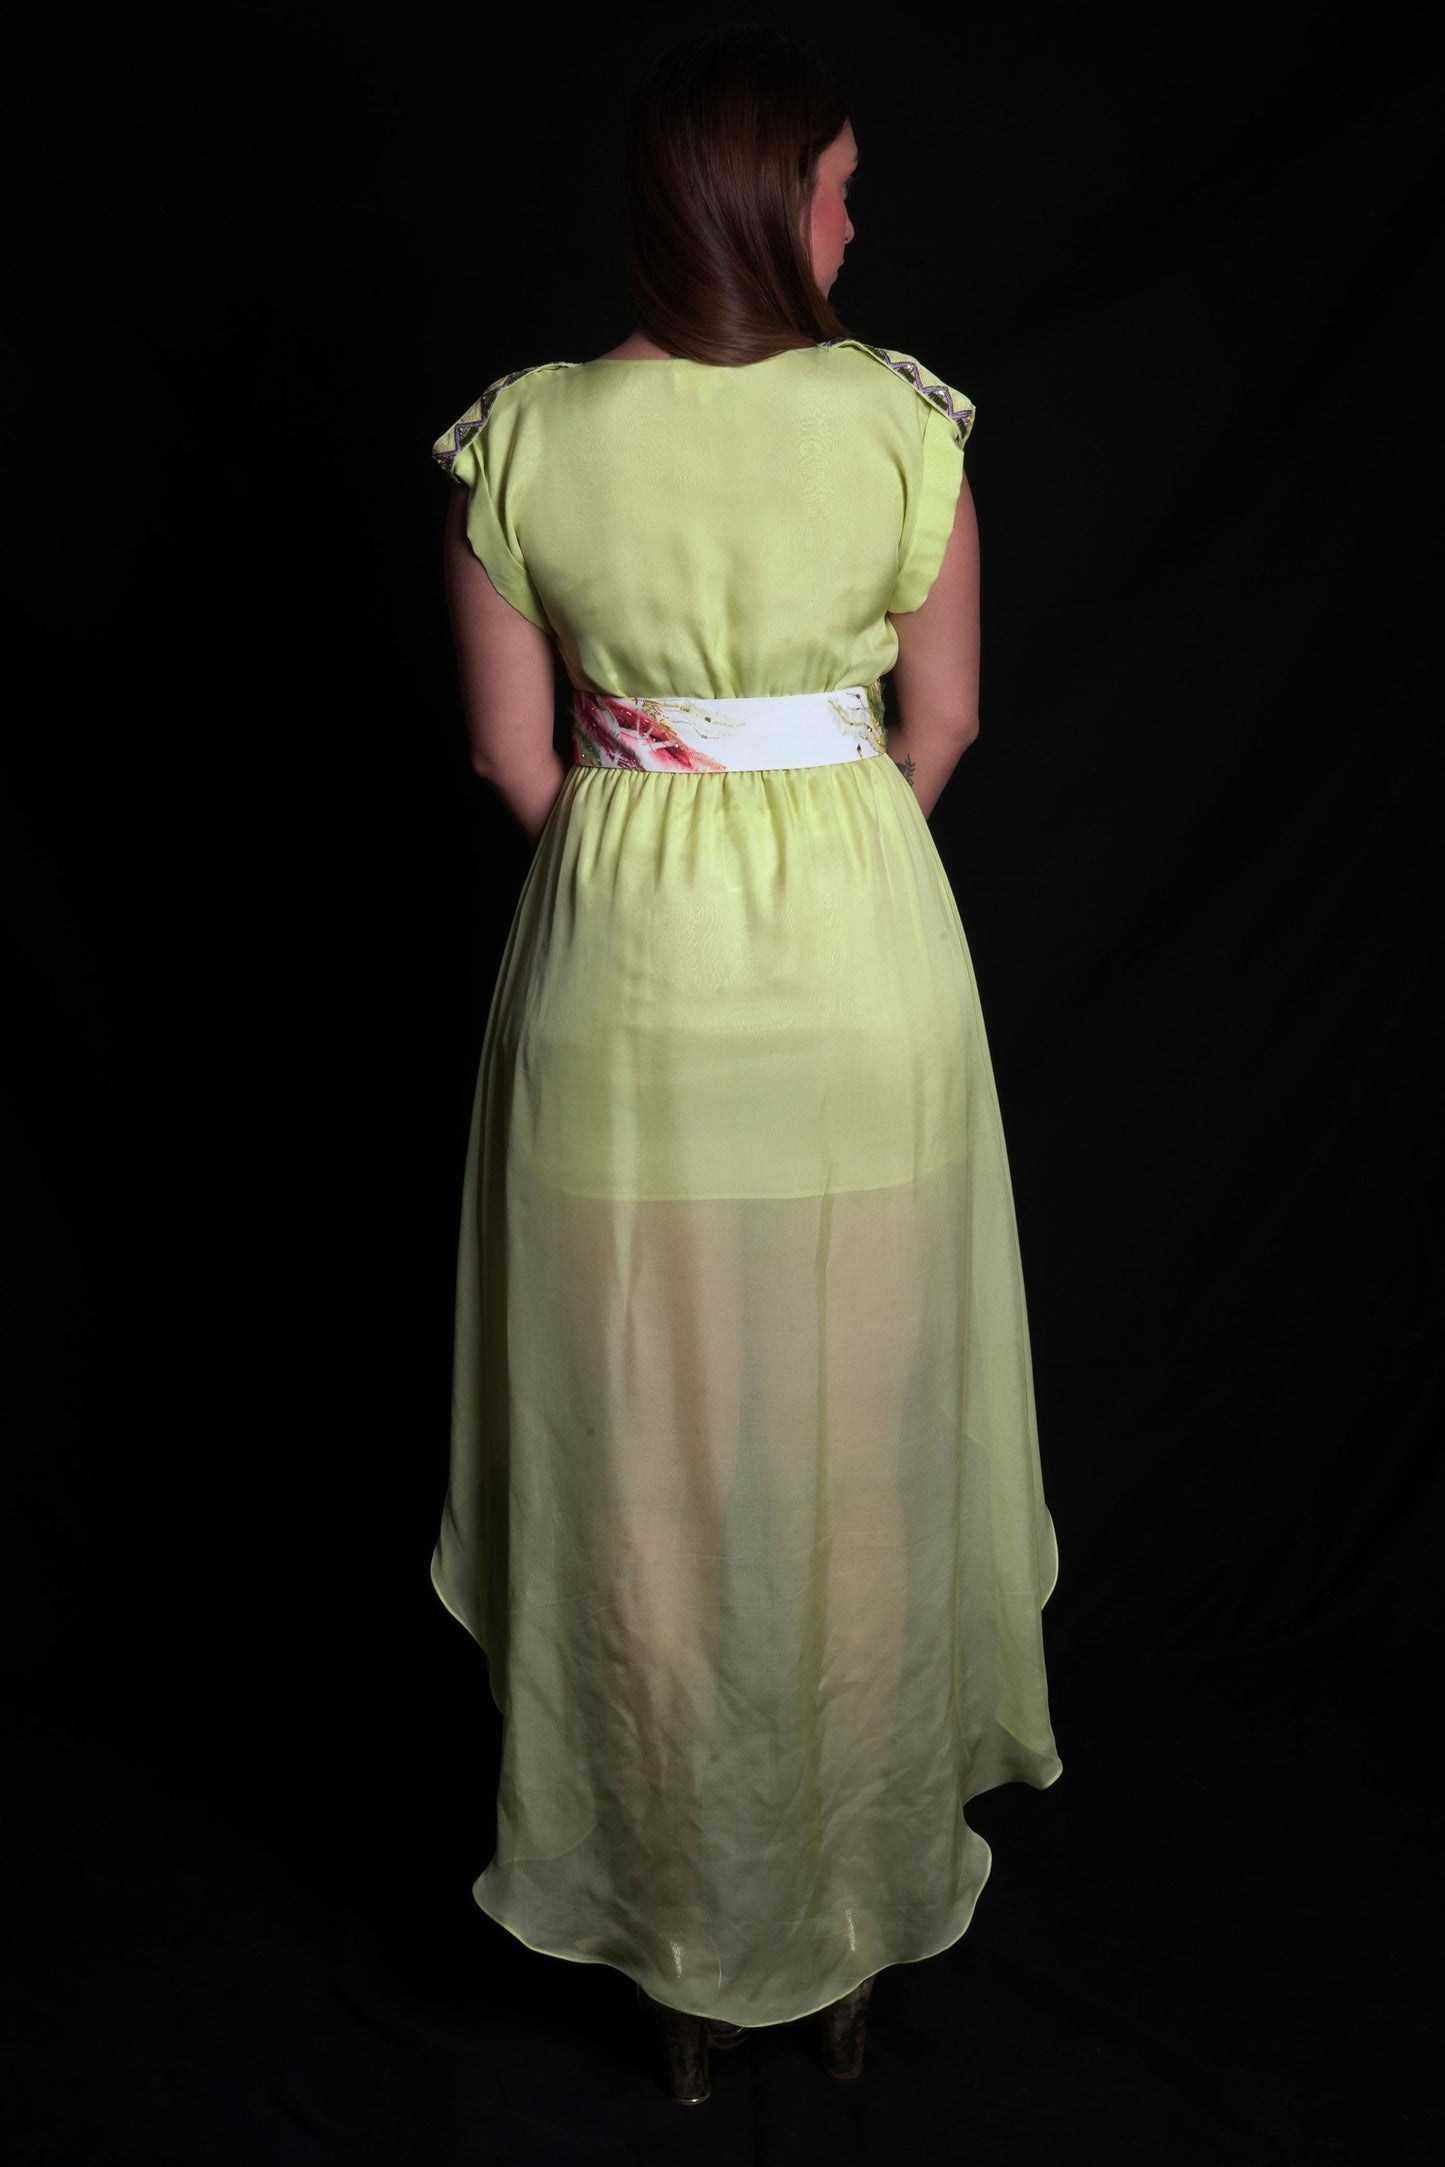 Daiquiri Green Asymmetric Dress